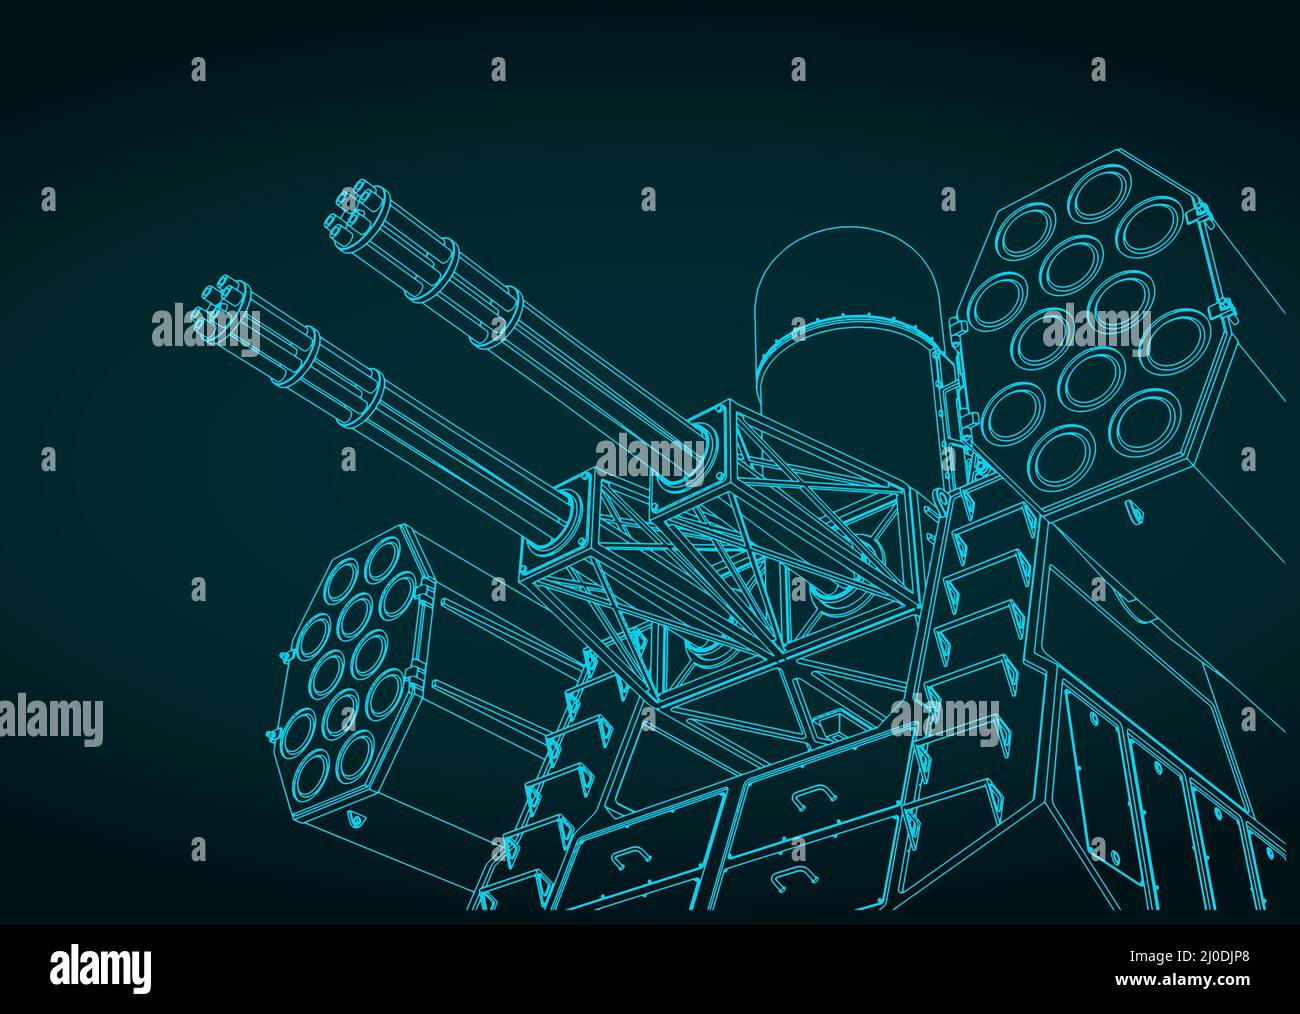 Illustration vectorielle stylisée d'un système de missiles antiaériens embarqués Illustration de Vecteur